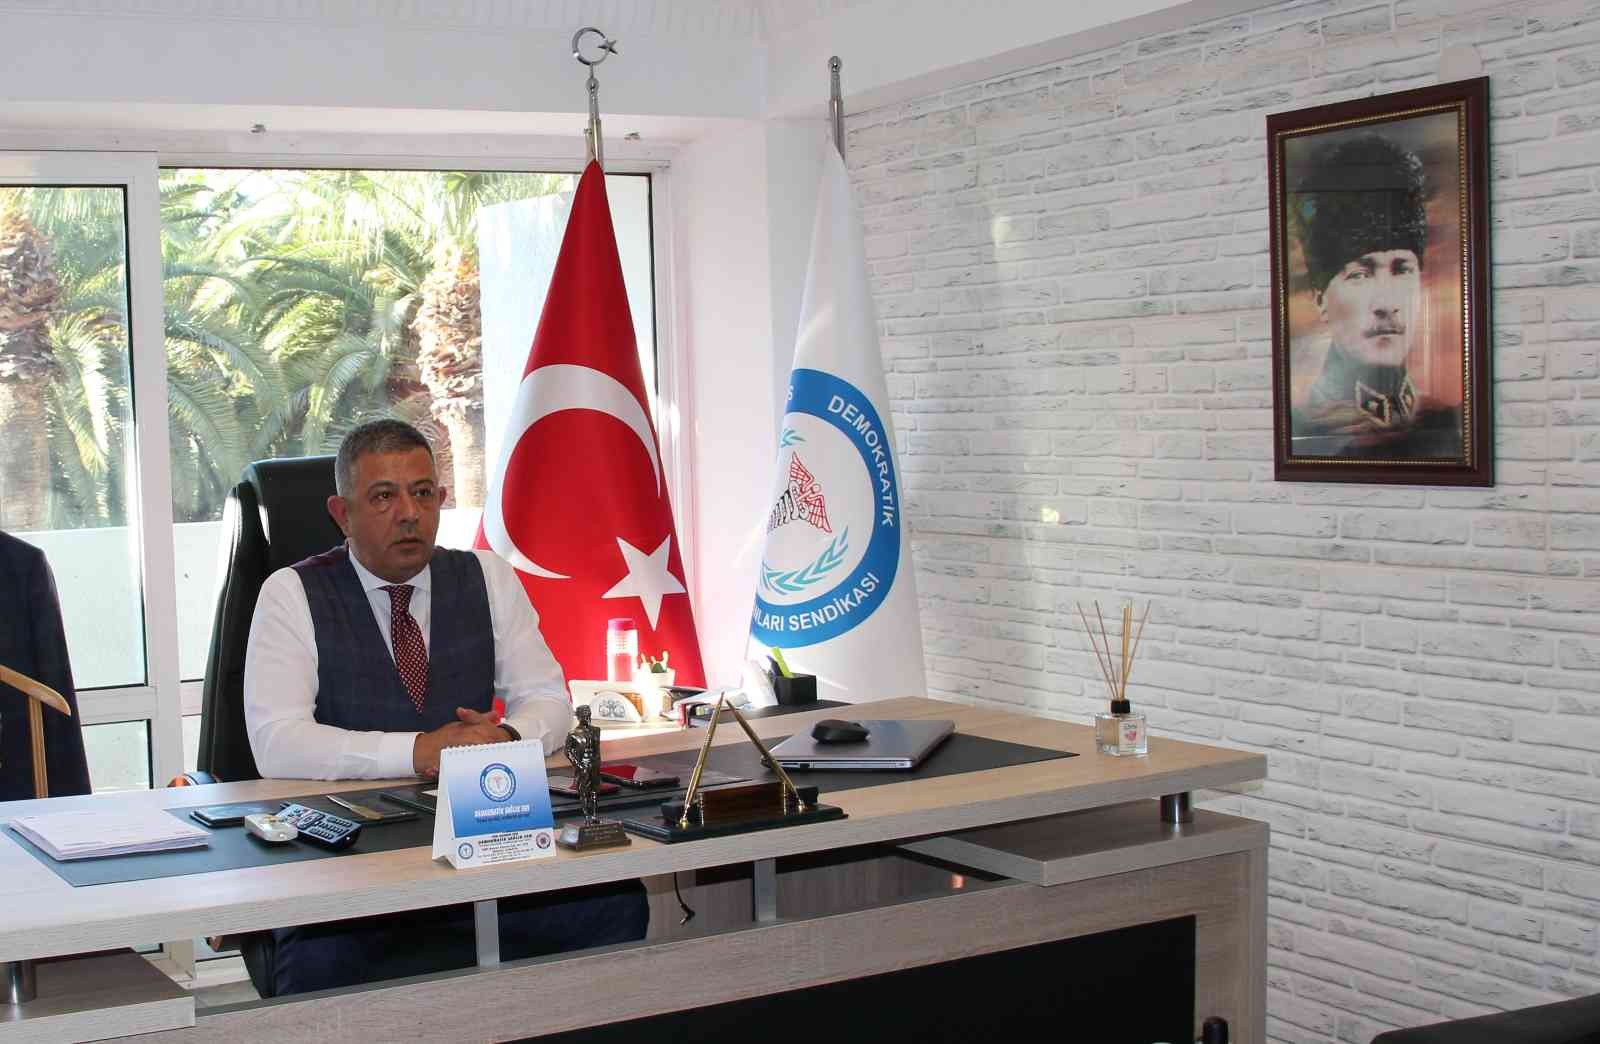 Başkan Demircan’dan, sağlıktaki sorunların çözümü için toplantı çağrısı #izmir